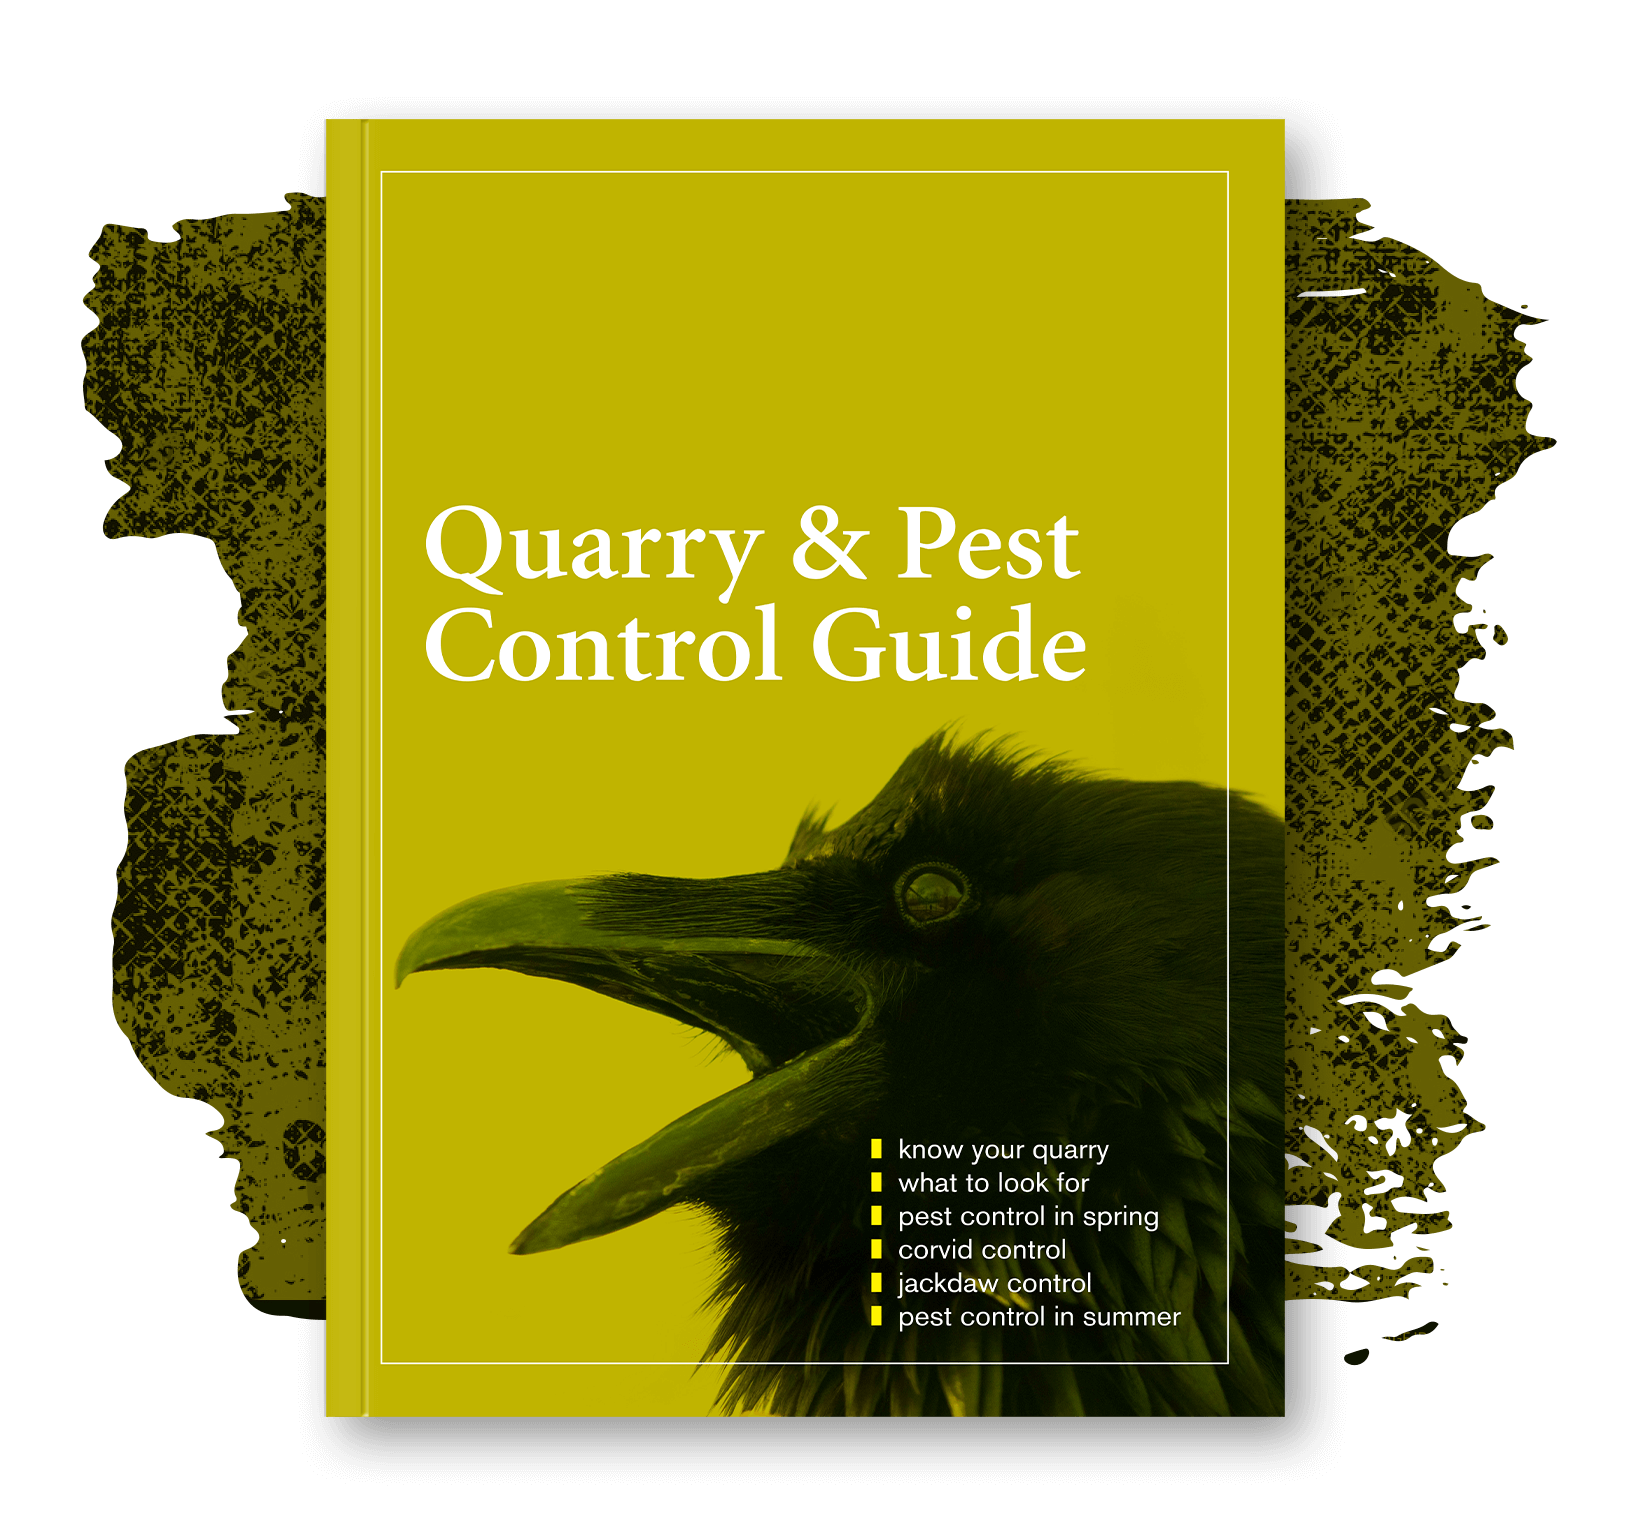 Quarry & Pest Control Guide